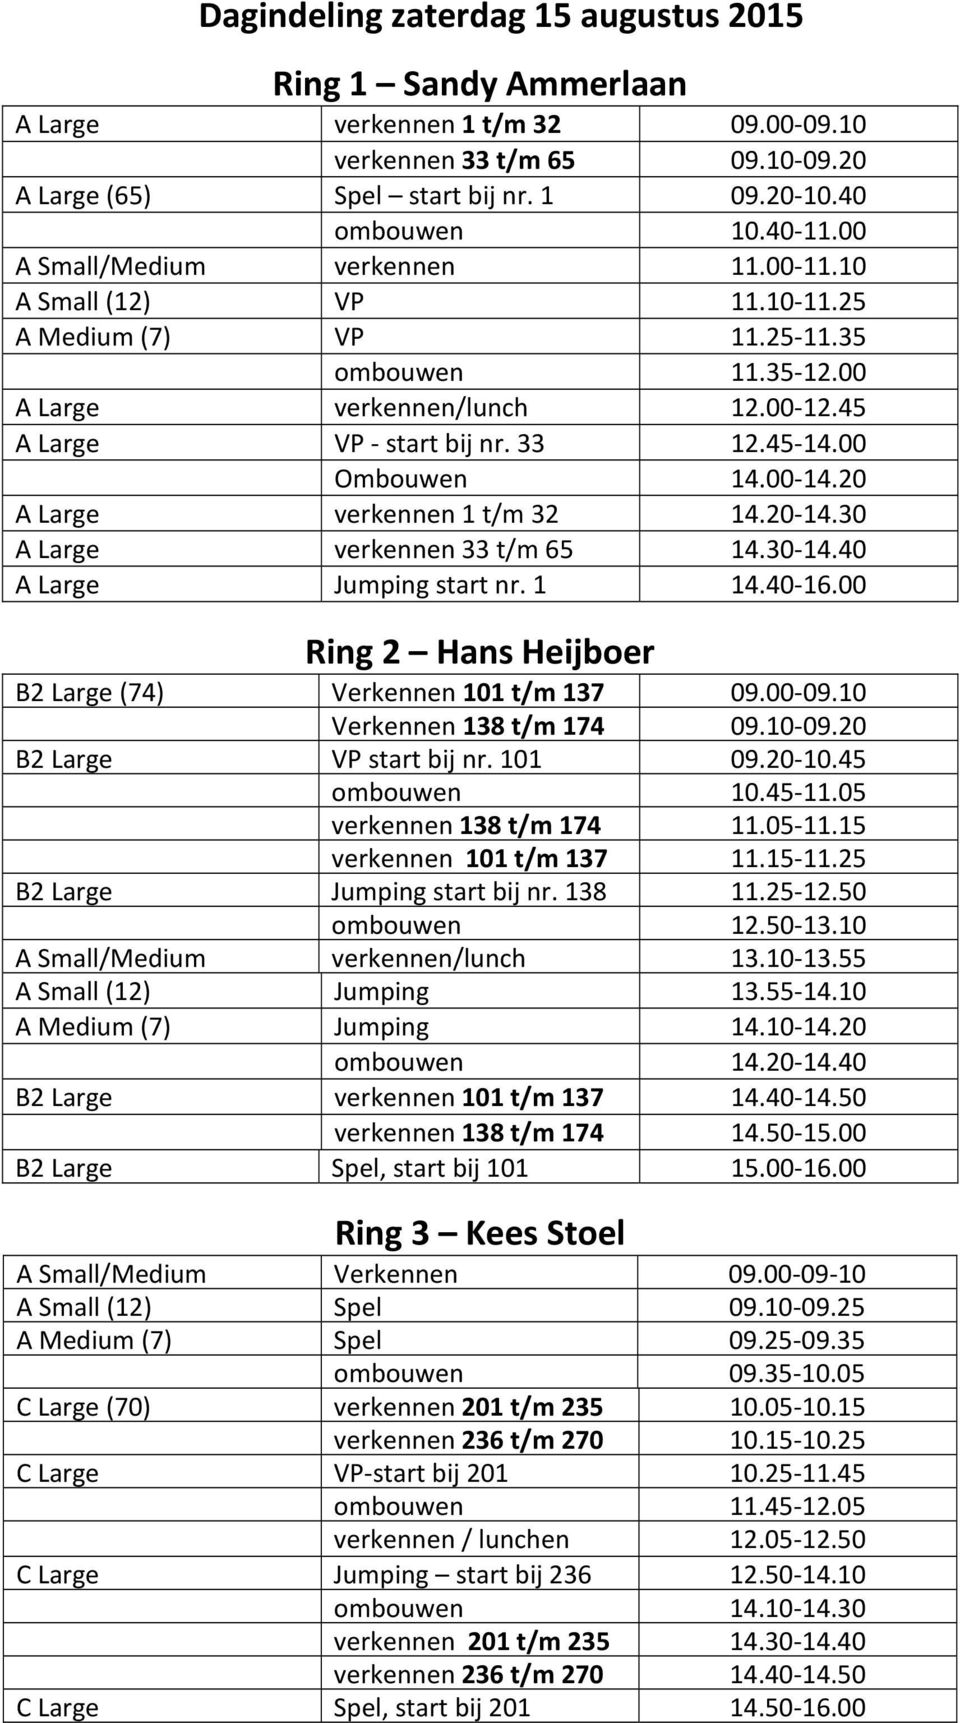 00 Ombouwen 14.00 14.20 A Large verkennen 1 t/m 32 14.20 14.30 A Large verkennen 33 t/m 65 14.30 14.40 A Large Jumping start nr. 1 14.40 16.